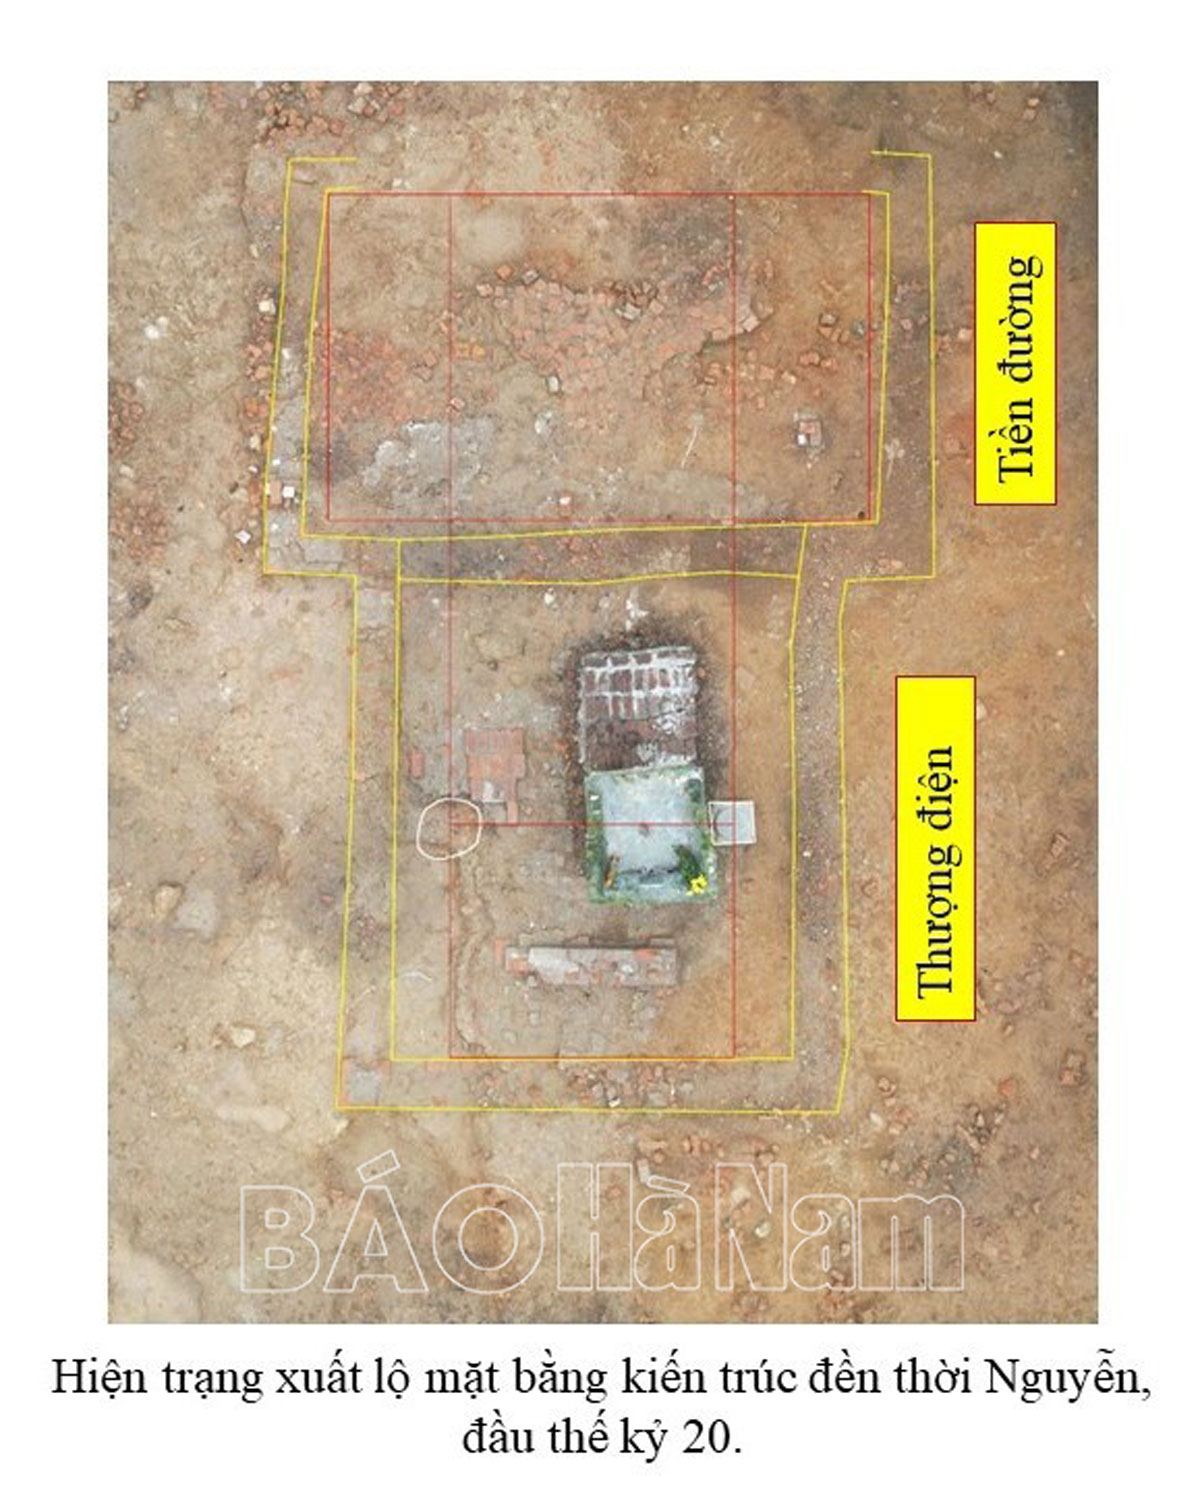 Khai quật khảo cổ học khẩn cấp dấu tích nền móng đền Thượng xã Liêm Cần